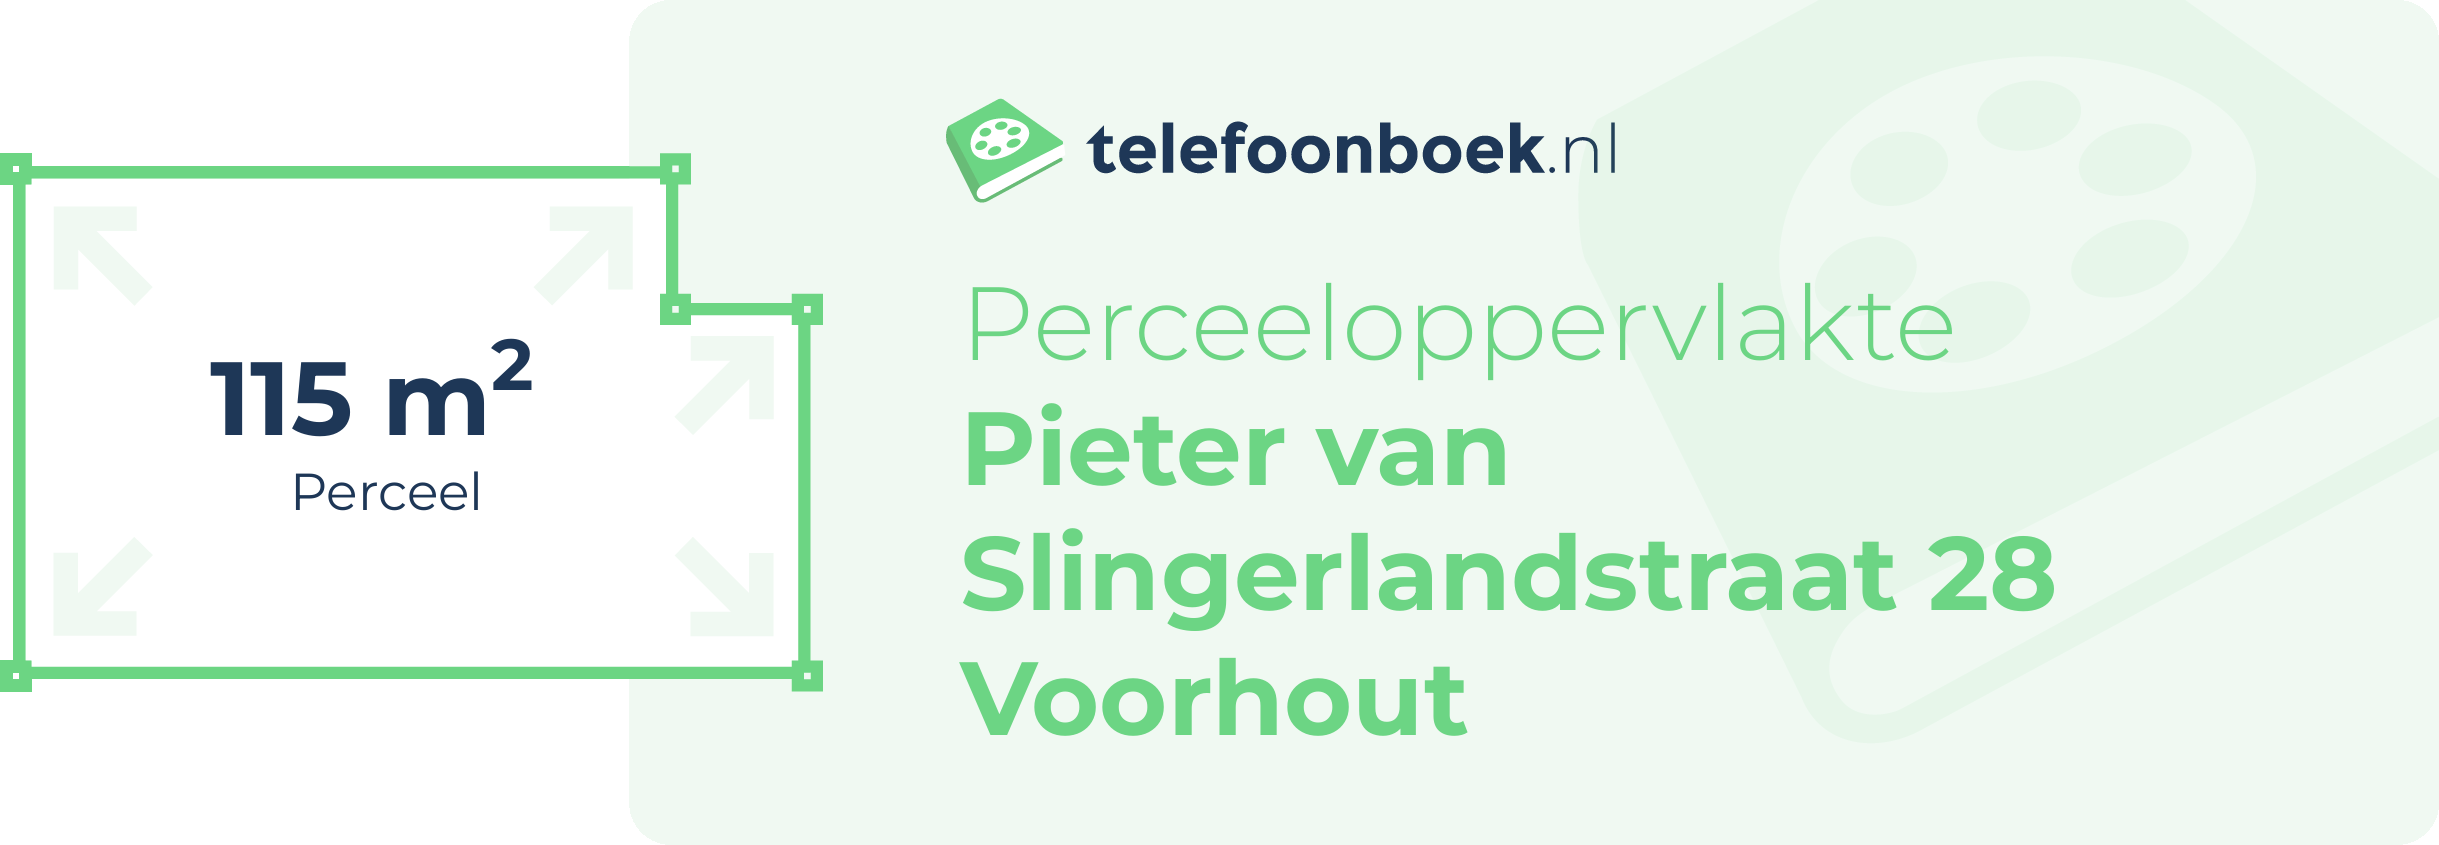 Perceeloppervlakte Pieter Van Slingerlandstraat 28 Voorhout